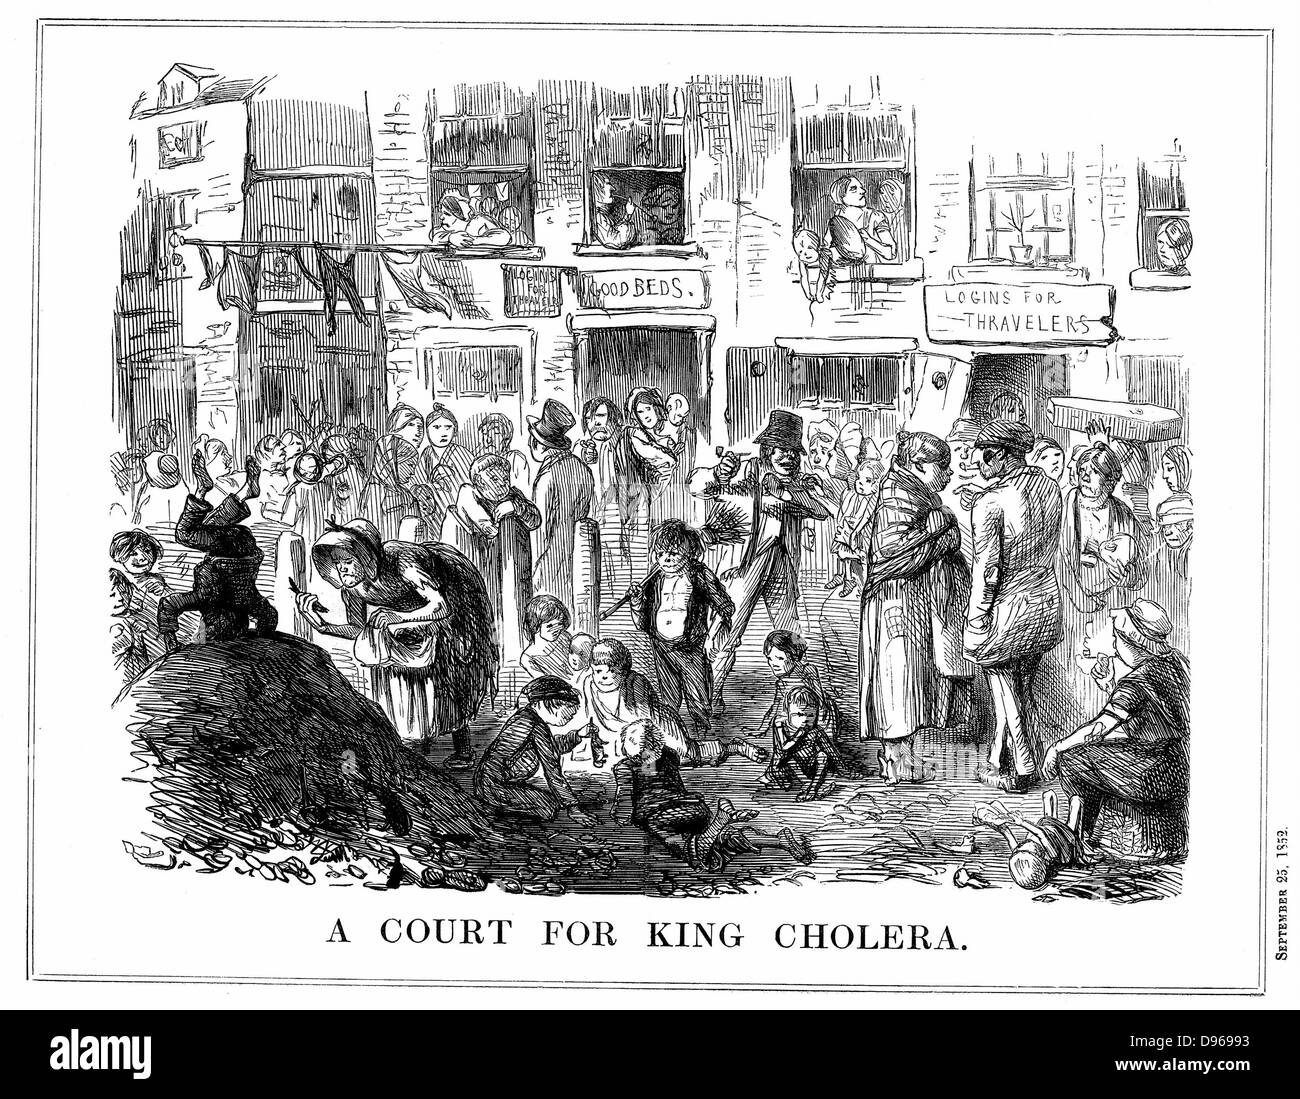 Una corte di re il colera" tipici di affollate, le condizioni antigieniche nella baraccopoli di Londra. Cartone animato da 'Foratura' Londra il 25 settembre 1852. Incisione su legno. Foto Stock